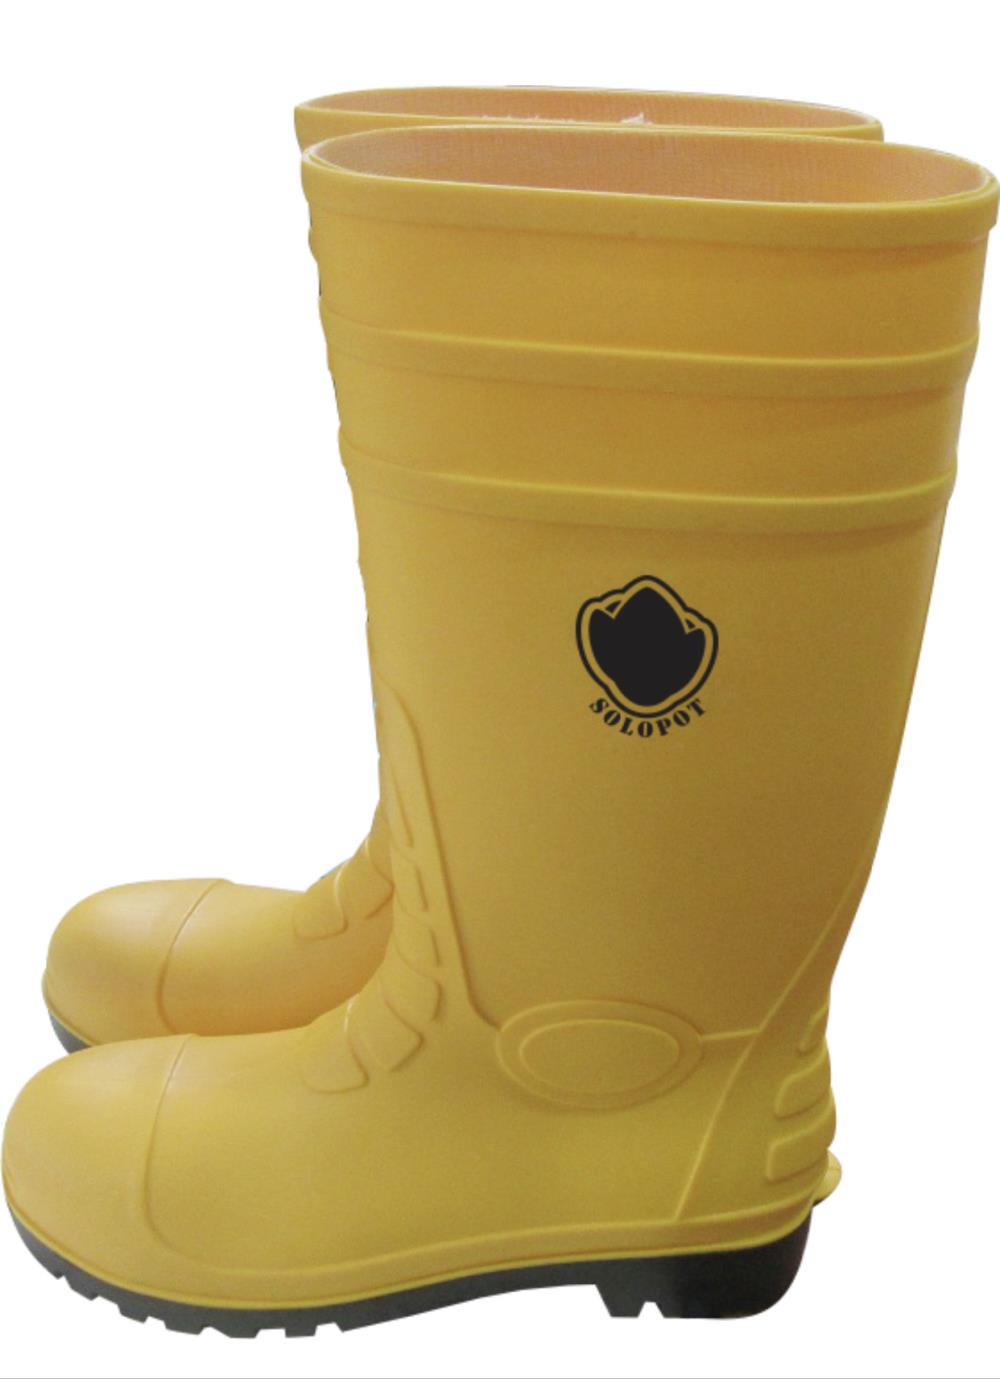 รองเท้าบู๊ทนิรภัย,รองเท้าบู๊ทหัวเหล็ก,SOLOPOT,Plant and Facility Equipment/Safety Equipment/Foot Protection Equipment